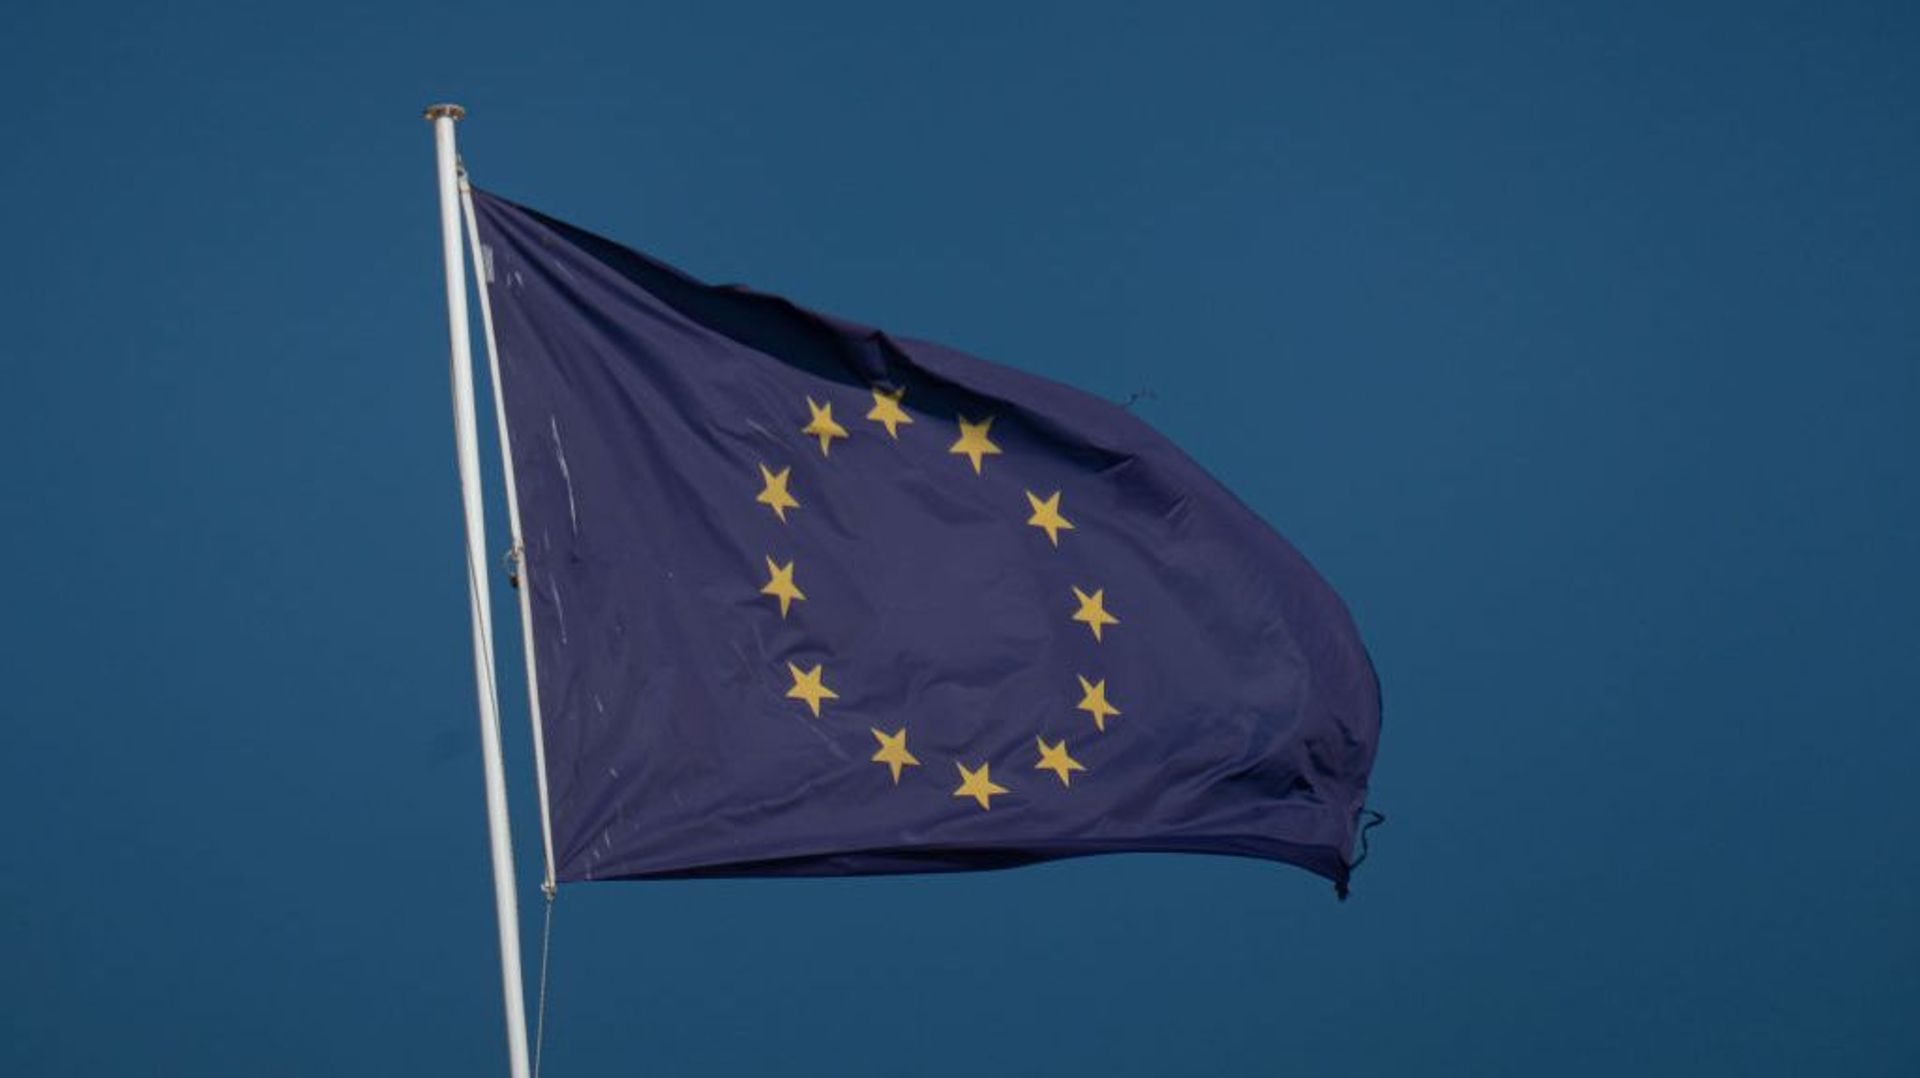 EU Flag In Greece